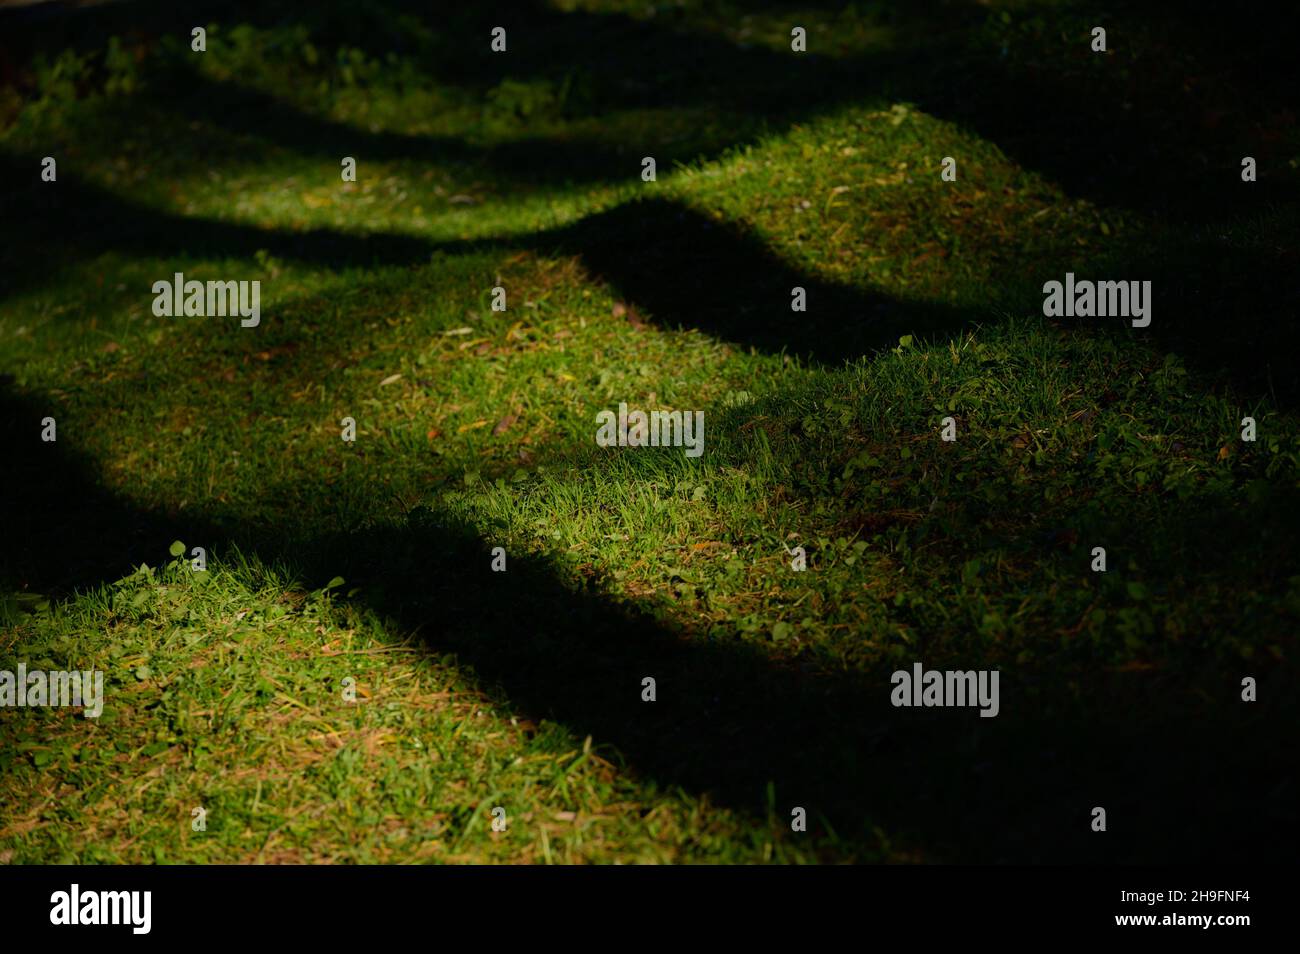 hermosa hierba verde en colinas onduladas iluminada con luz del atardecer con sombras oscuras y profundas de los árboles Foto de stock